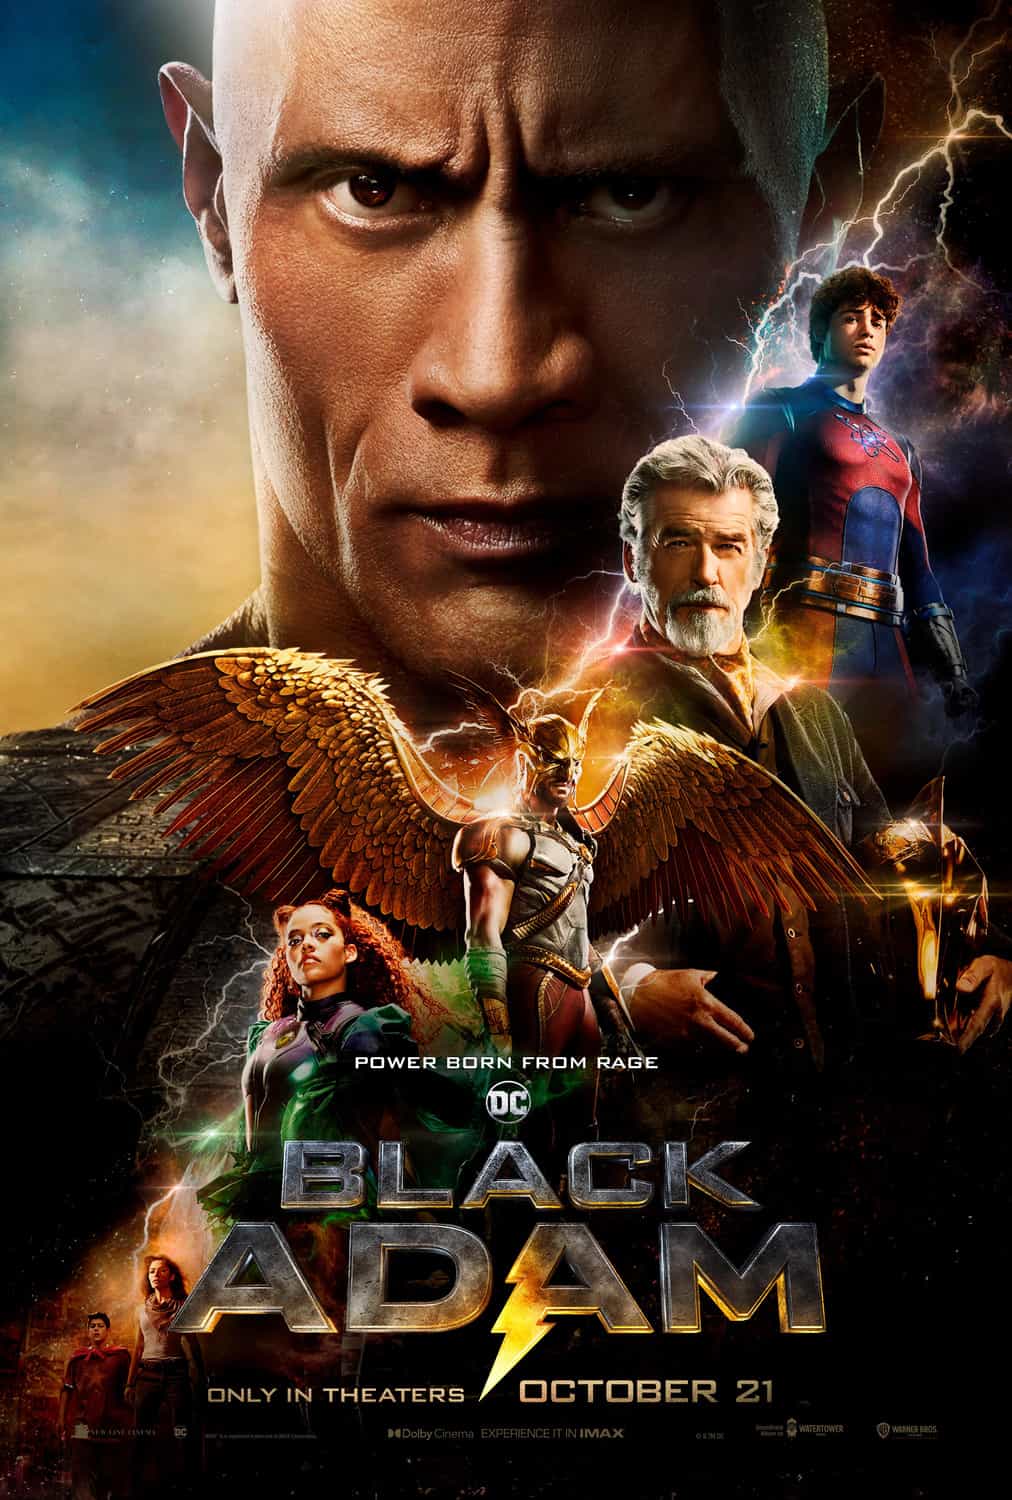 New poster released for Black Adam starring Dwayne Johnson - movie UK release date 21st October 2022 #blackadam